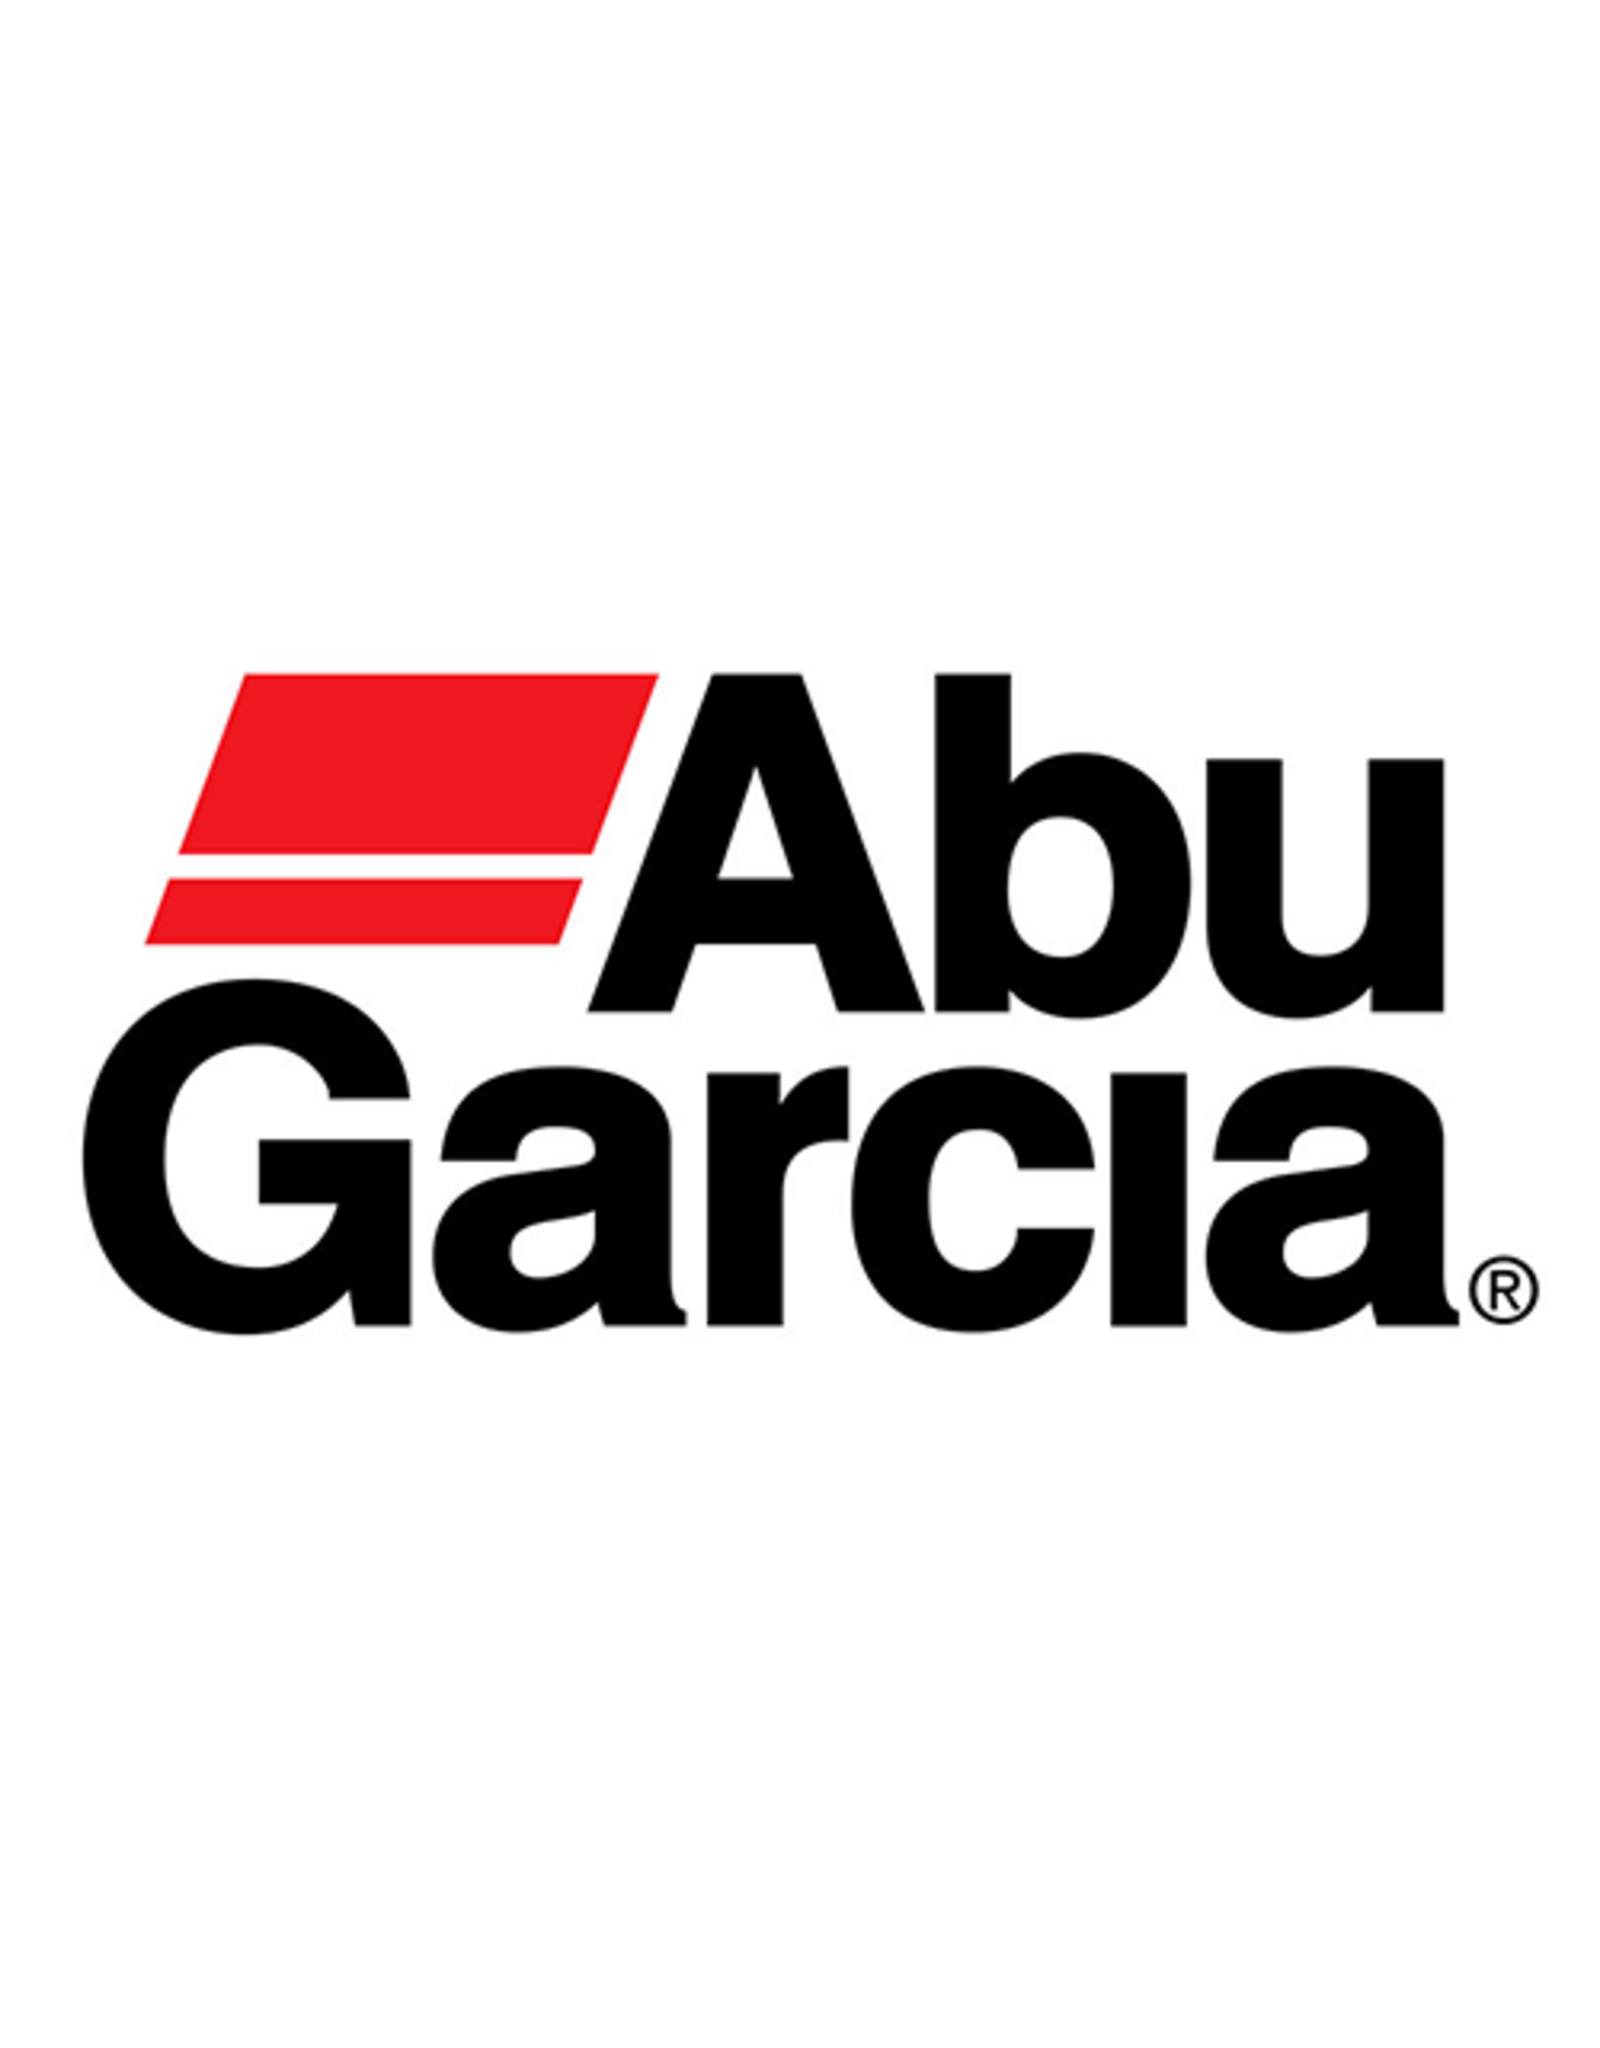 Abu Garcia 970264  SPOOL